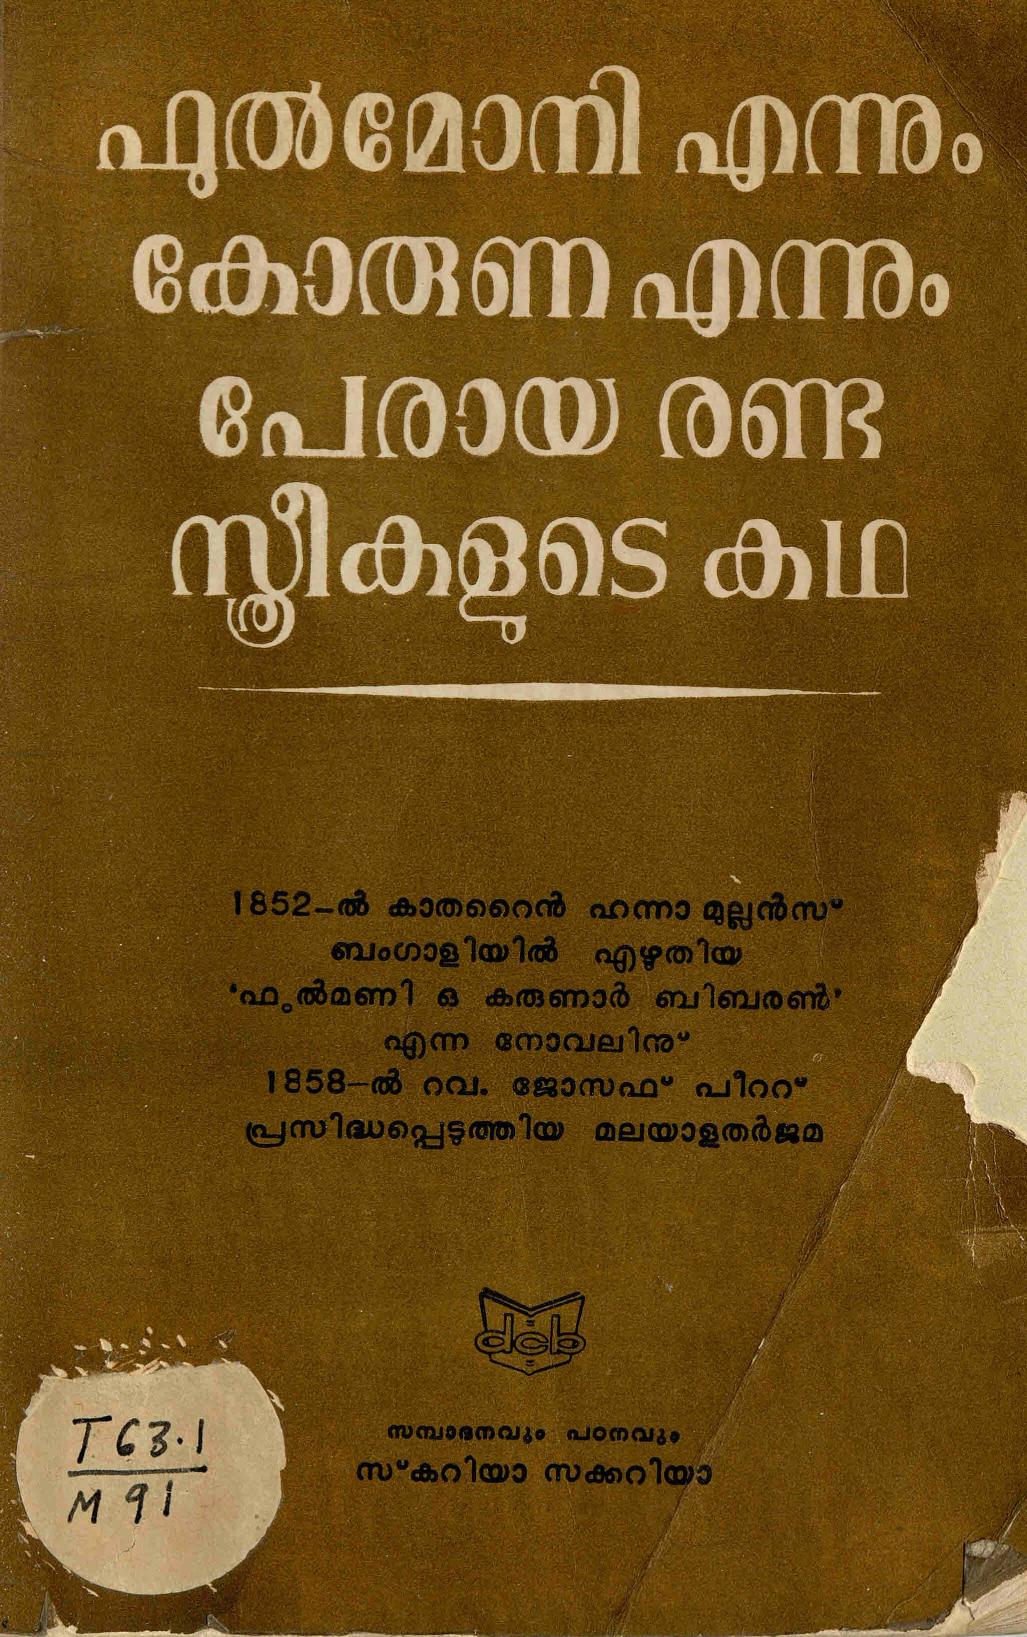 1989 - ഫുൽമോനി എന്നും കോരുണ എന്നും പേരായ രണ്ടു സ്ത്രീകളുടെ കഥ - കാതറൈൻ ഹന്ന മുല്ലൻസ്